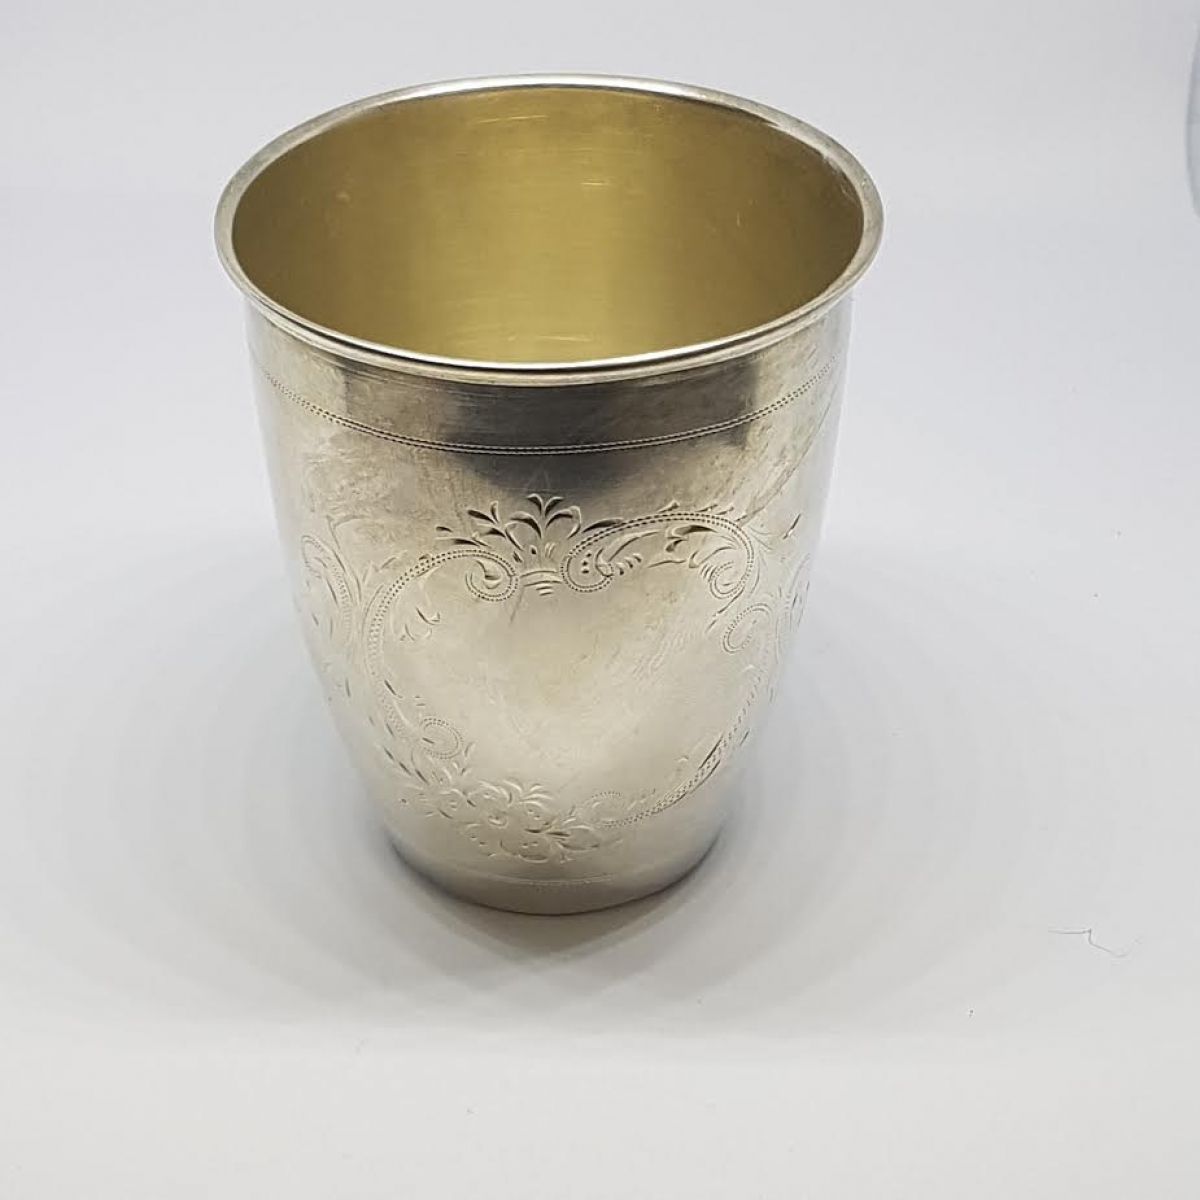 Srebrna čaša / 45,45 grama /Srebro 800